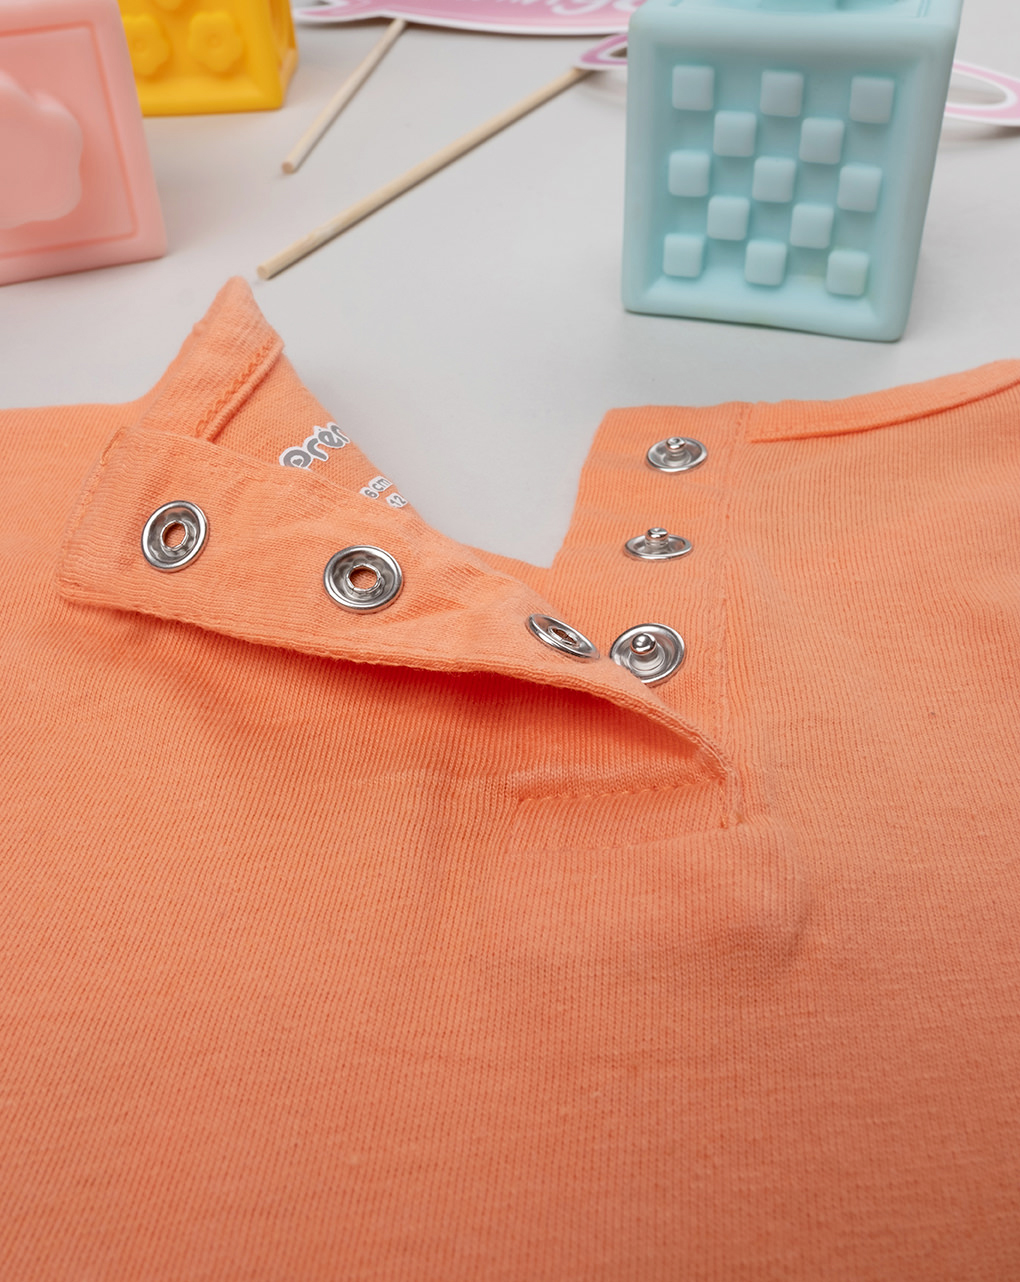 βρεφική μπλούζα πορτοκαλί με γατάκια για κορίτσι - Prénatal